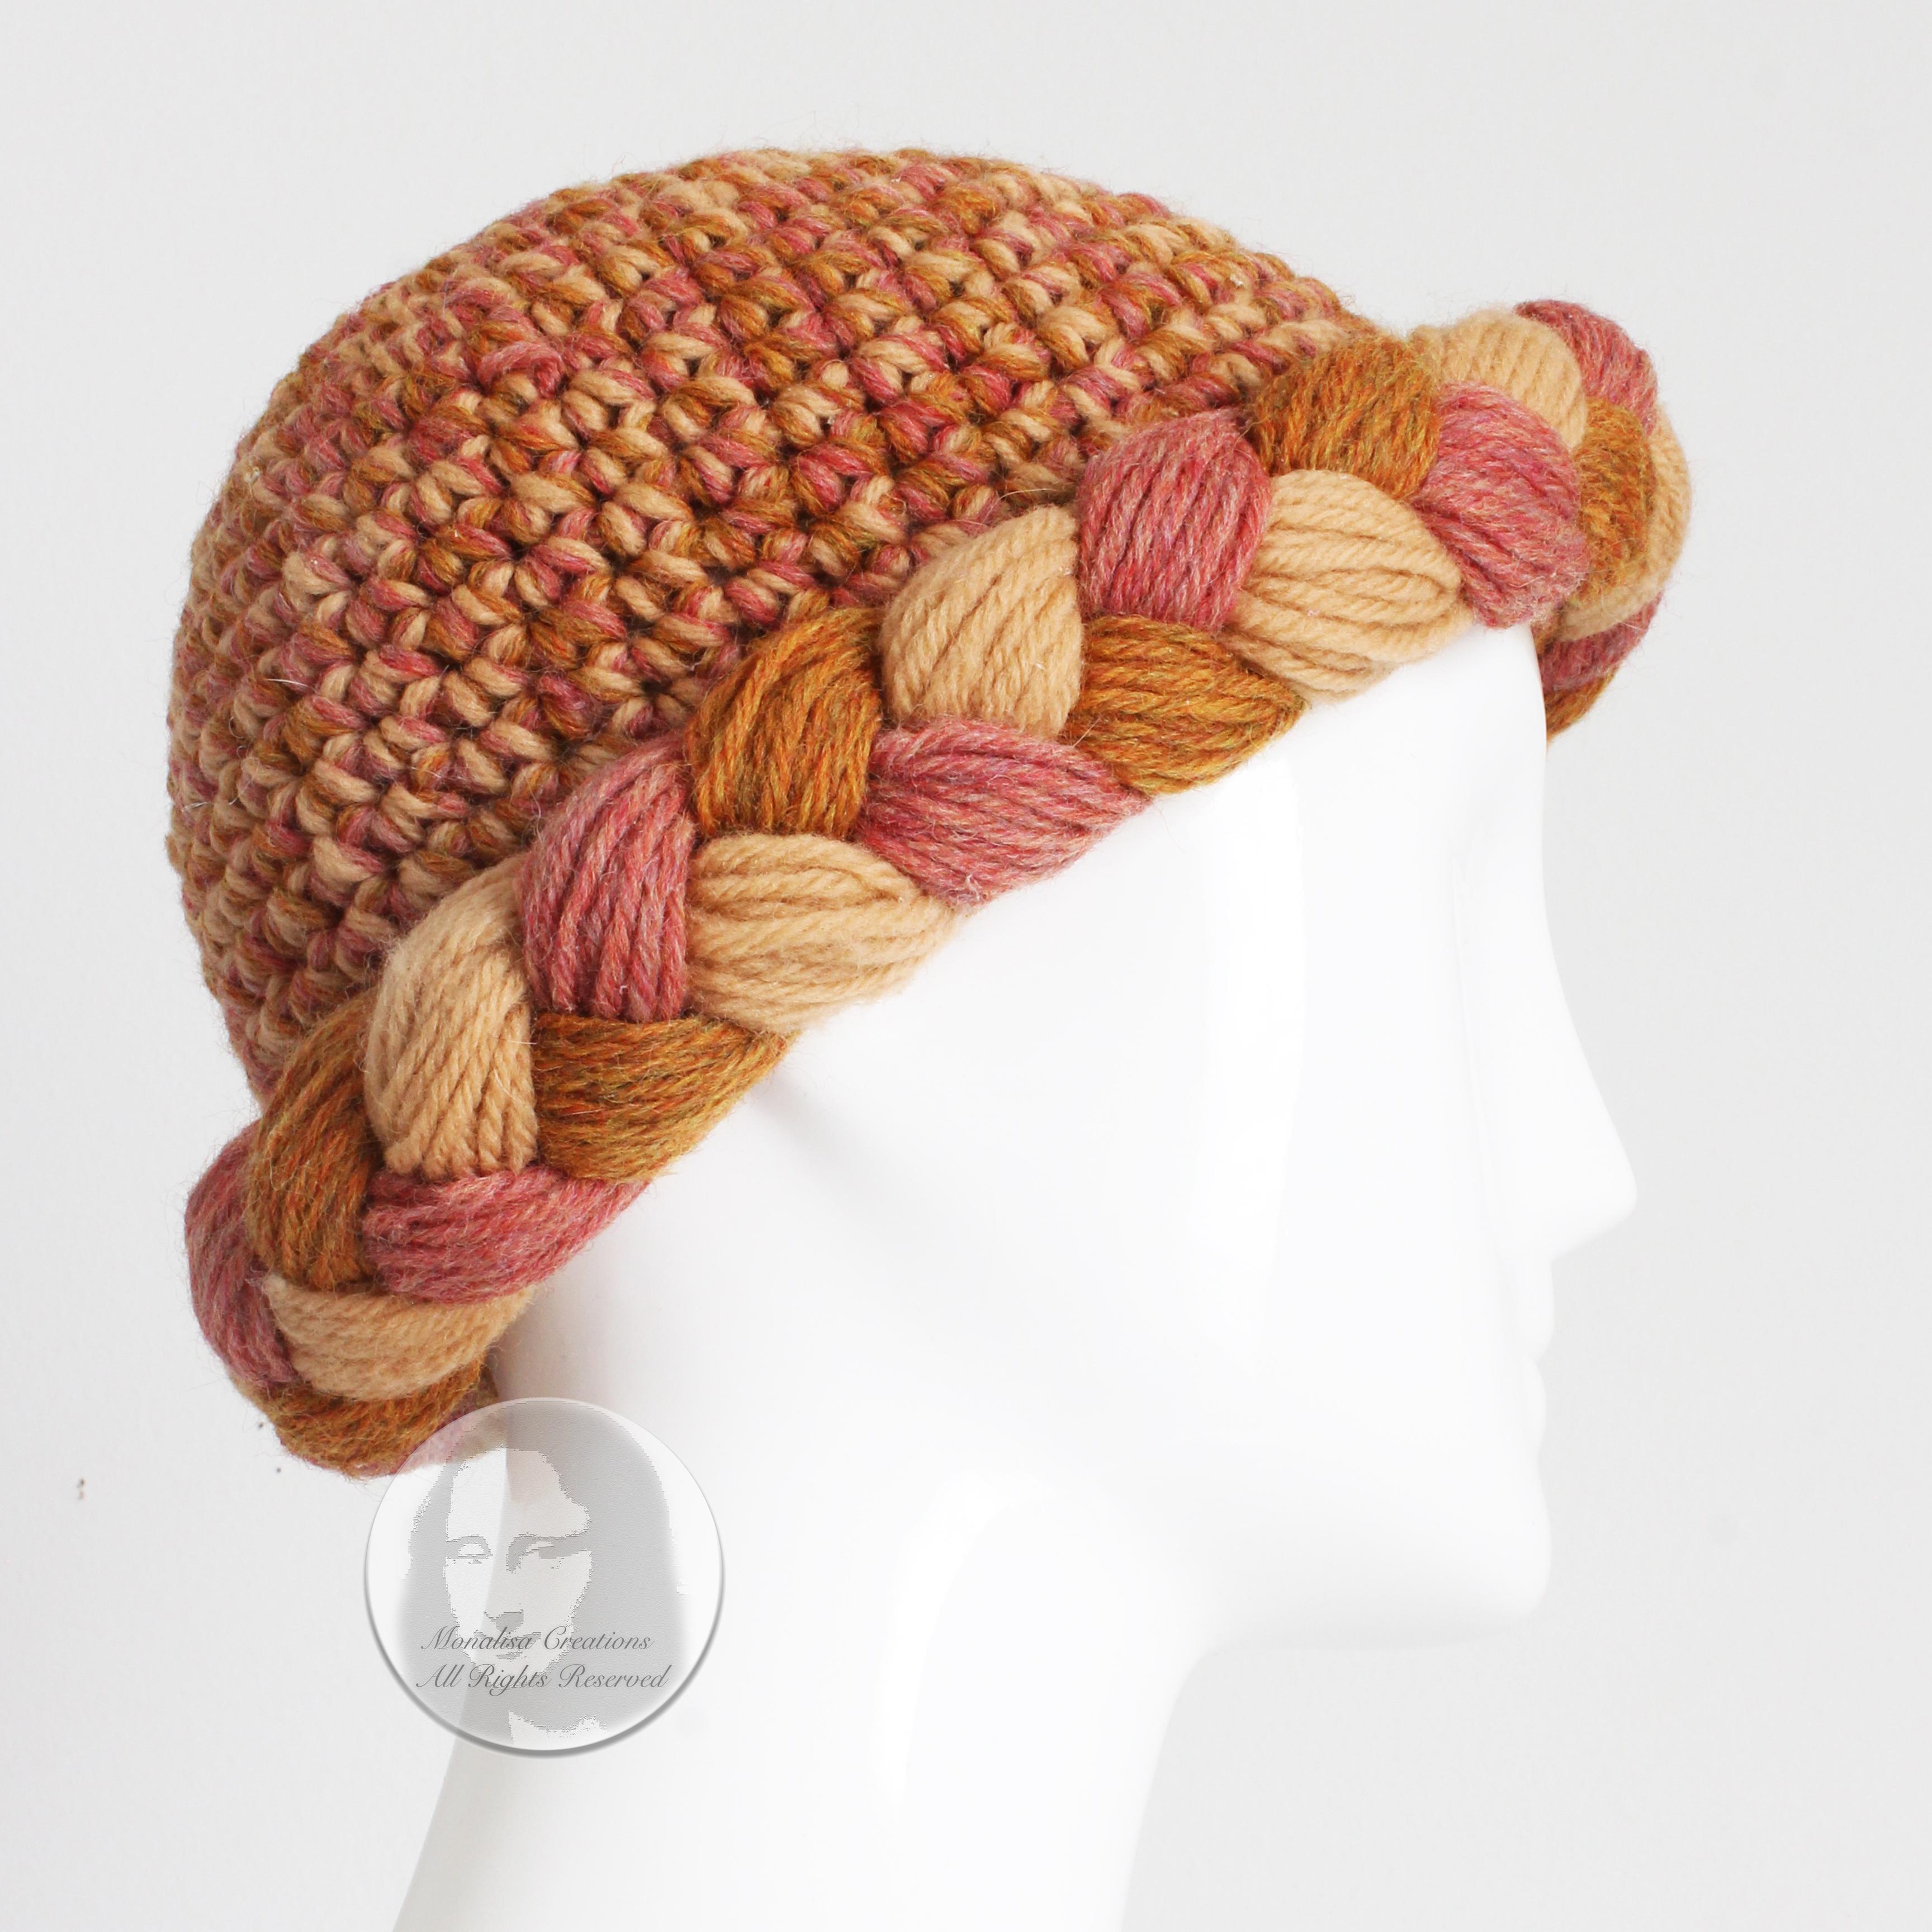 Yves Saint Laurent Knit Hat Multicolor Thick Braid Wool Cap Vintage 1970s Rare  2